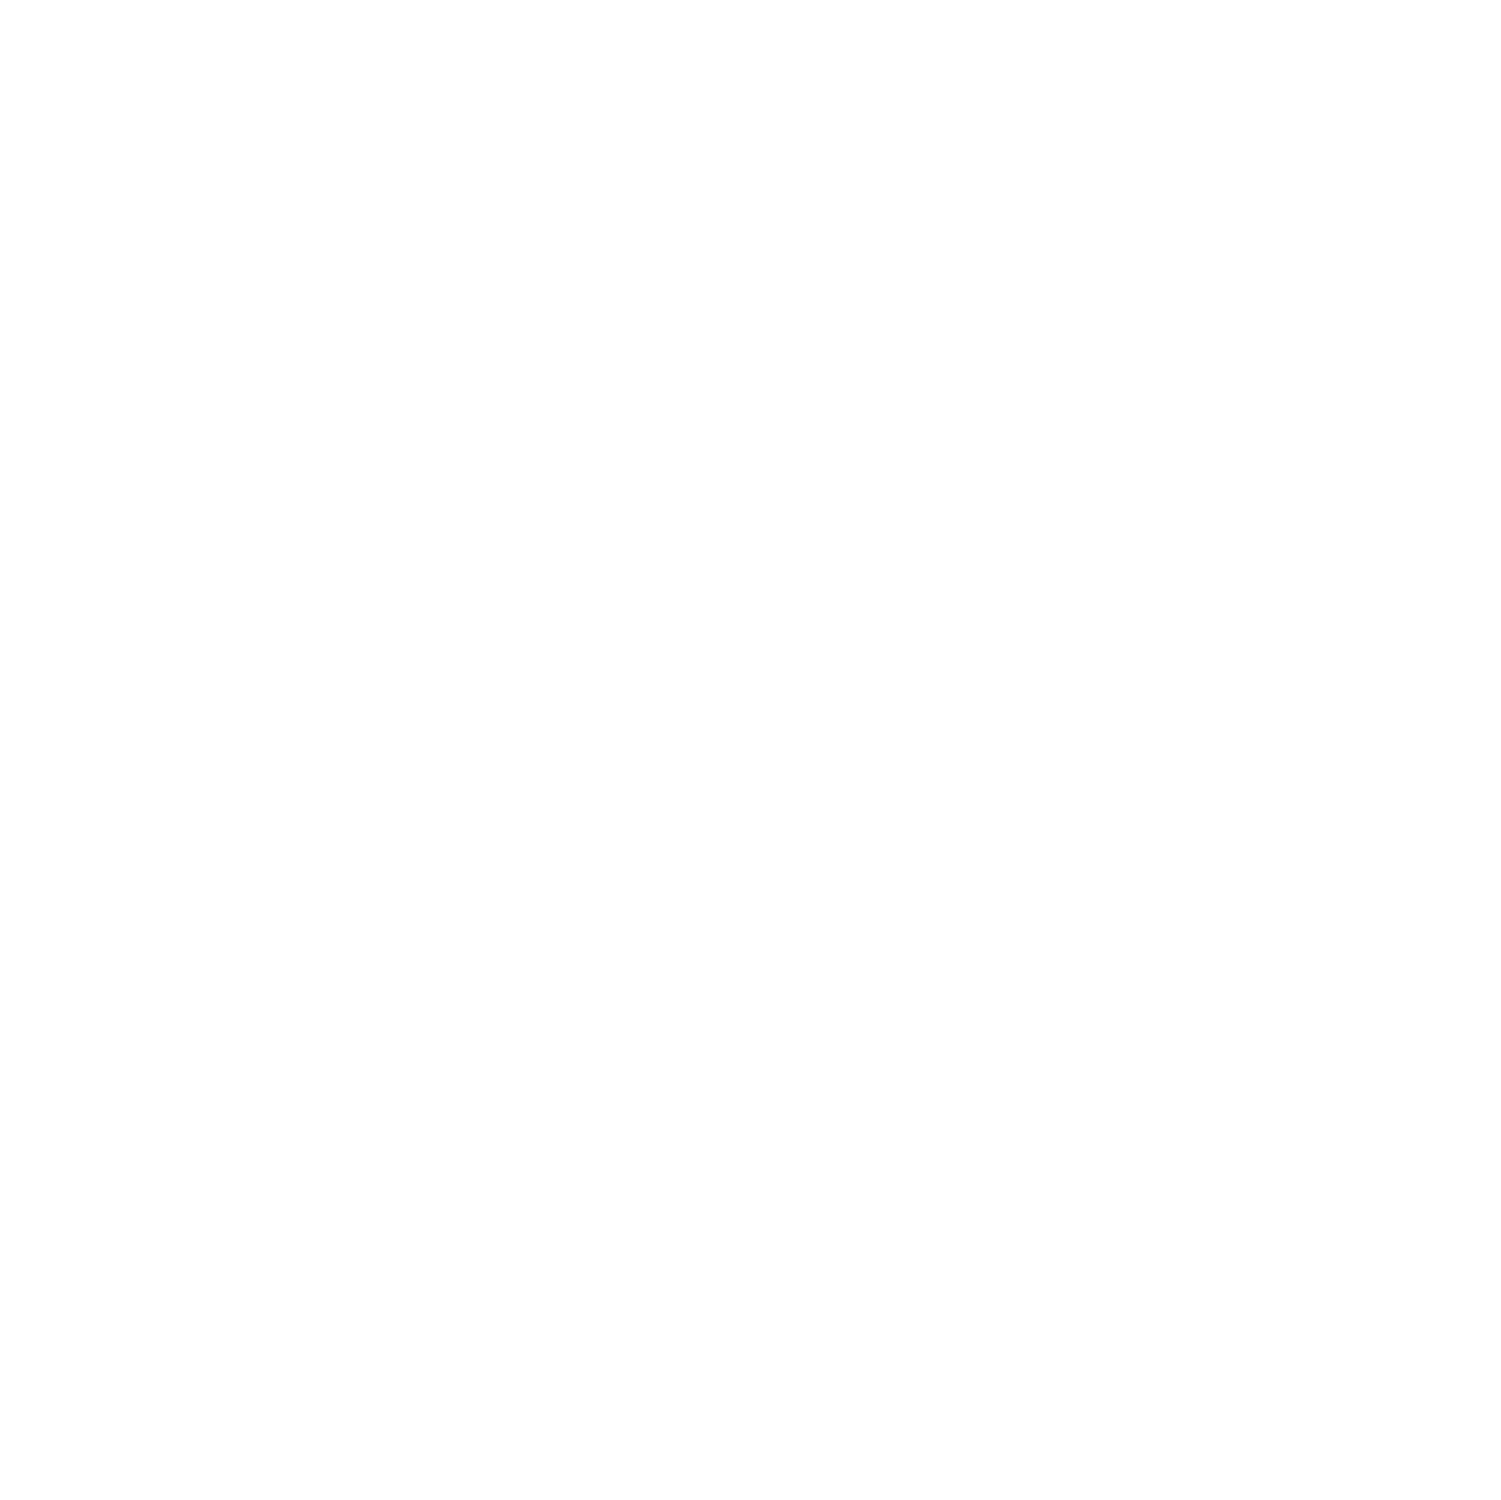 Silence Violence Silence